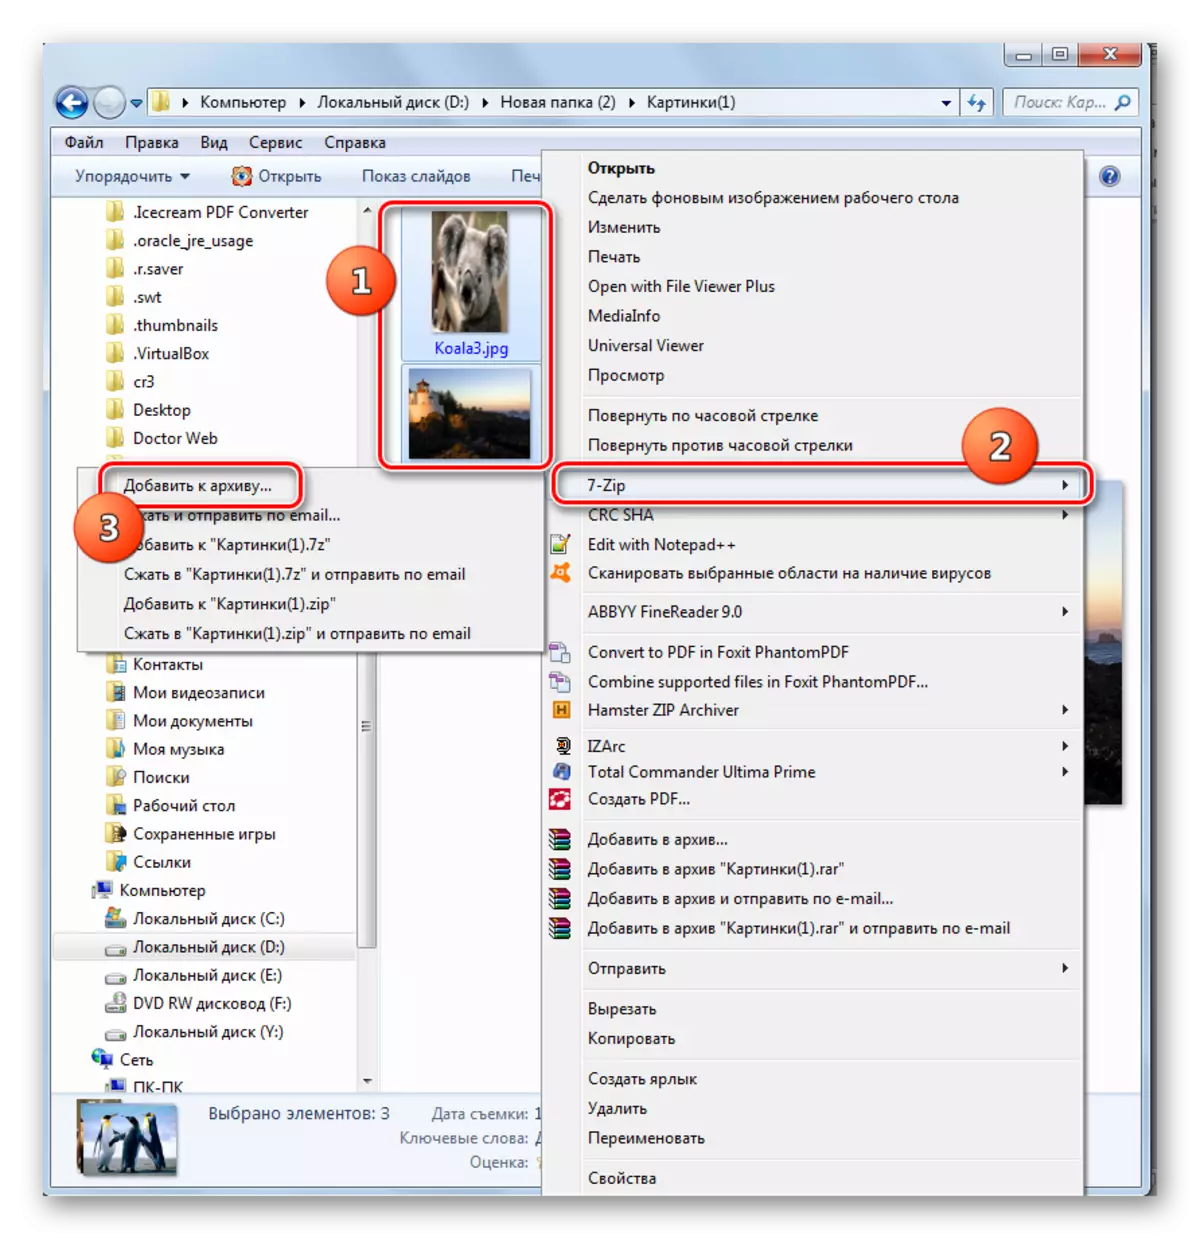 Siirry luomaan ZIP-arkistoon Windows Explorerin kontekstivalikon kautta 7-ZIP-ohjelmassa